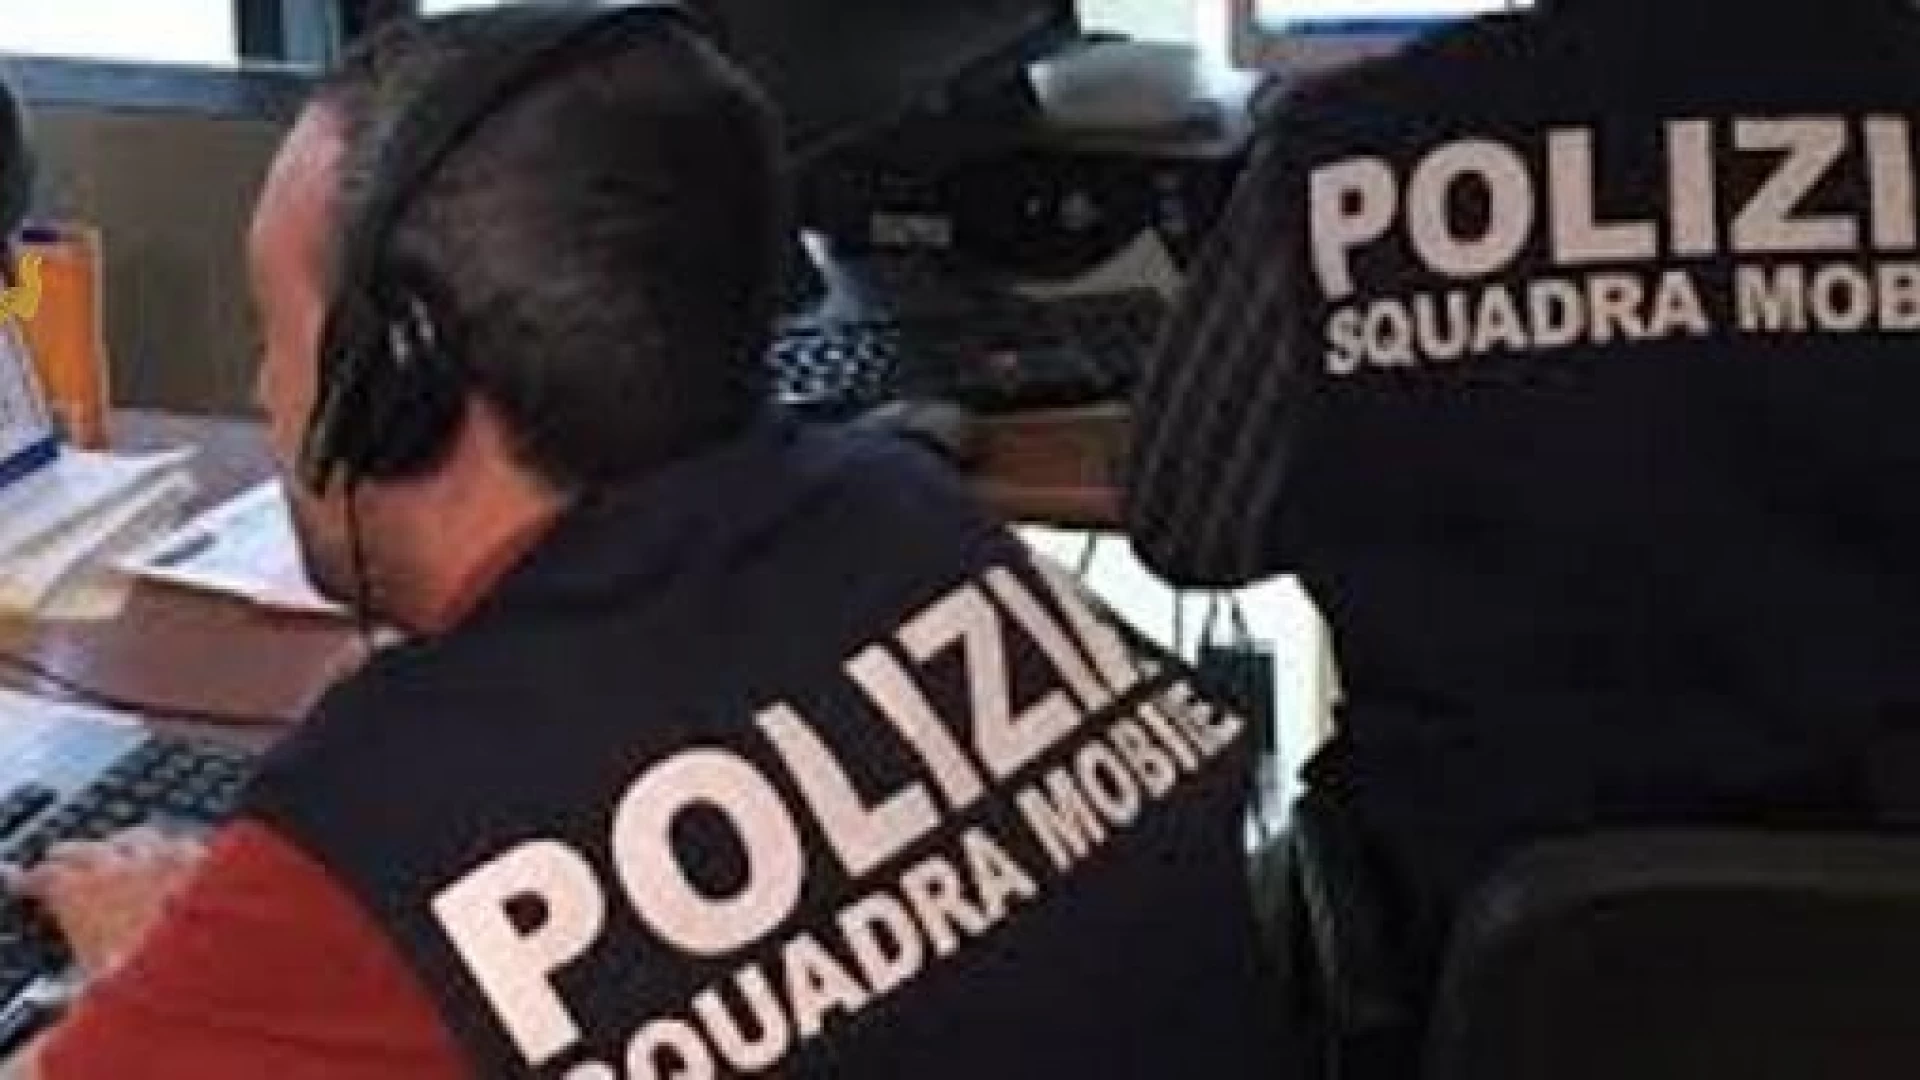 Provincia dell’Aquila, stop a gruppi di giovani violenti. Operazione congiunta della Mobile e dei Carabinieri. Eseguite 13 misure cautelari.